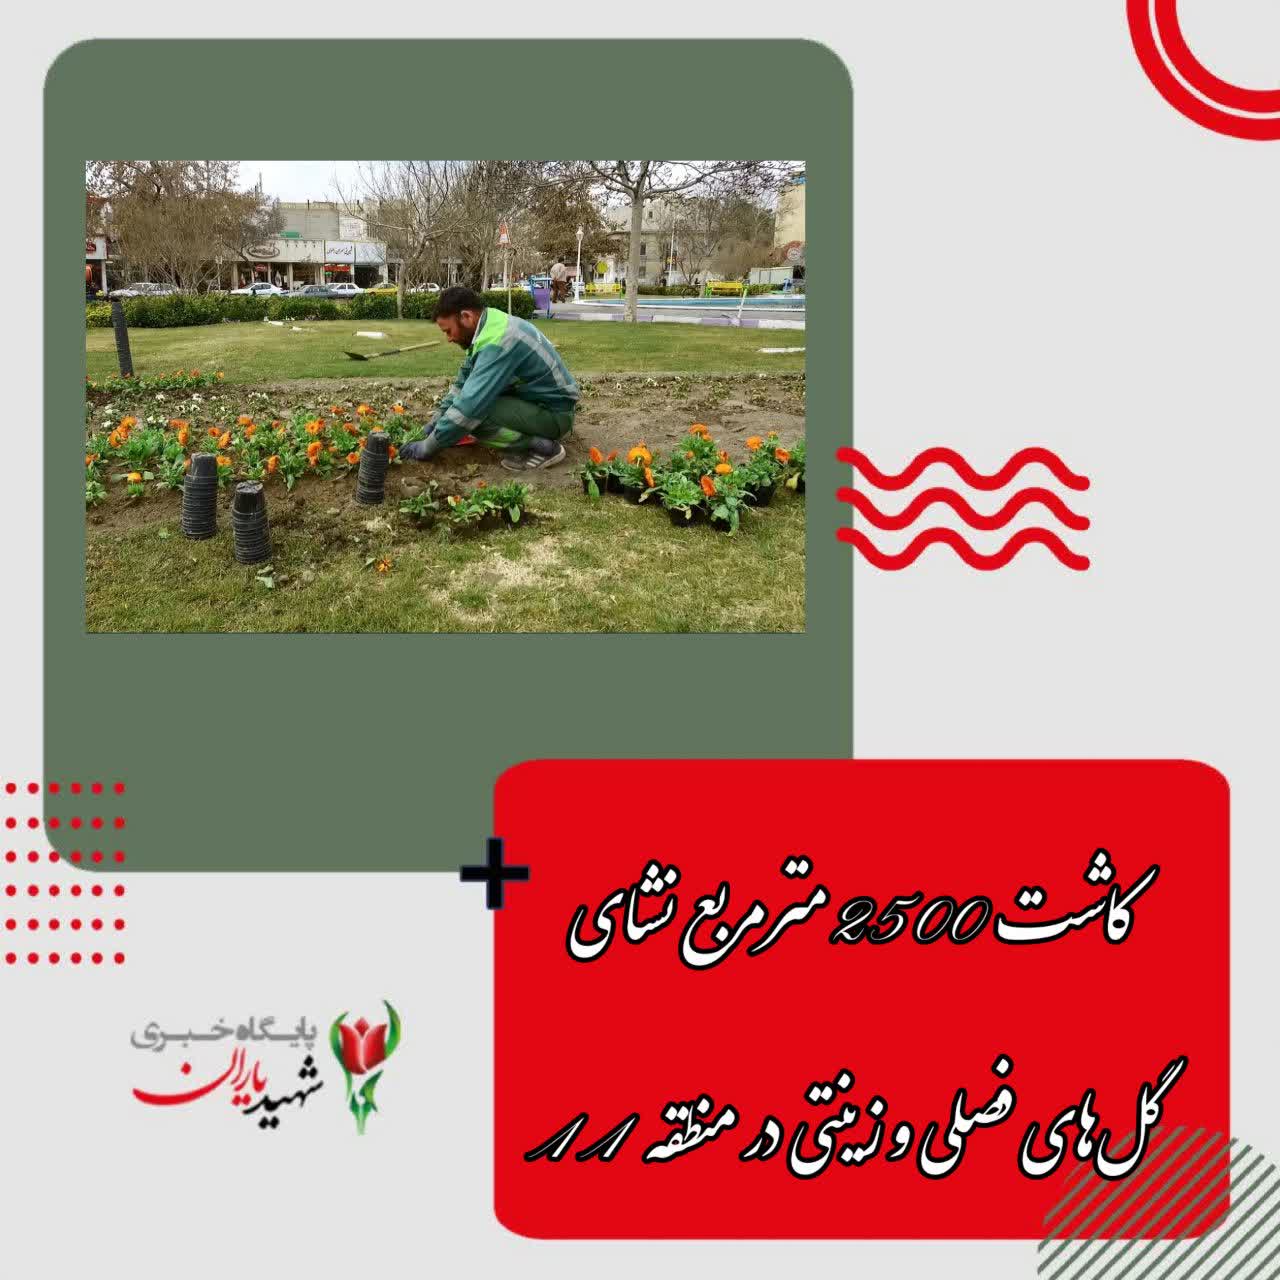 مدیر منطقه ۱۱ شهرداری اصفهان خبر داد:کاشت ۲۵۰۰ مترمربع نشای گل‌های فصلی و زینتی در منطقه ۱۱